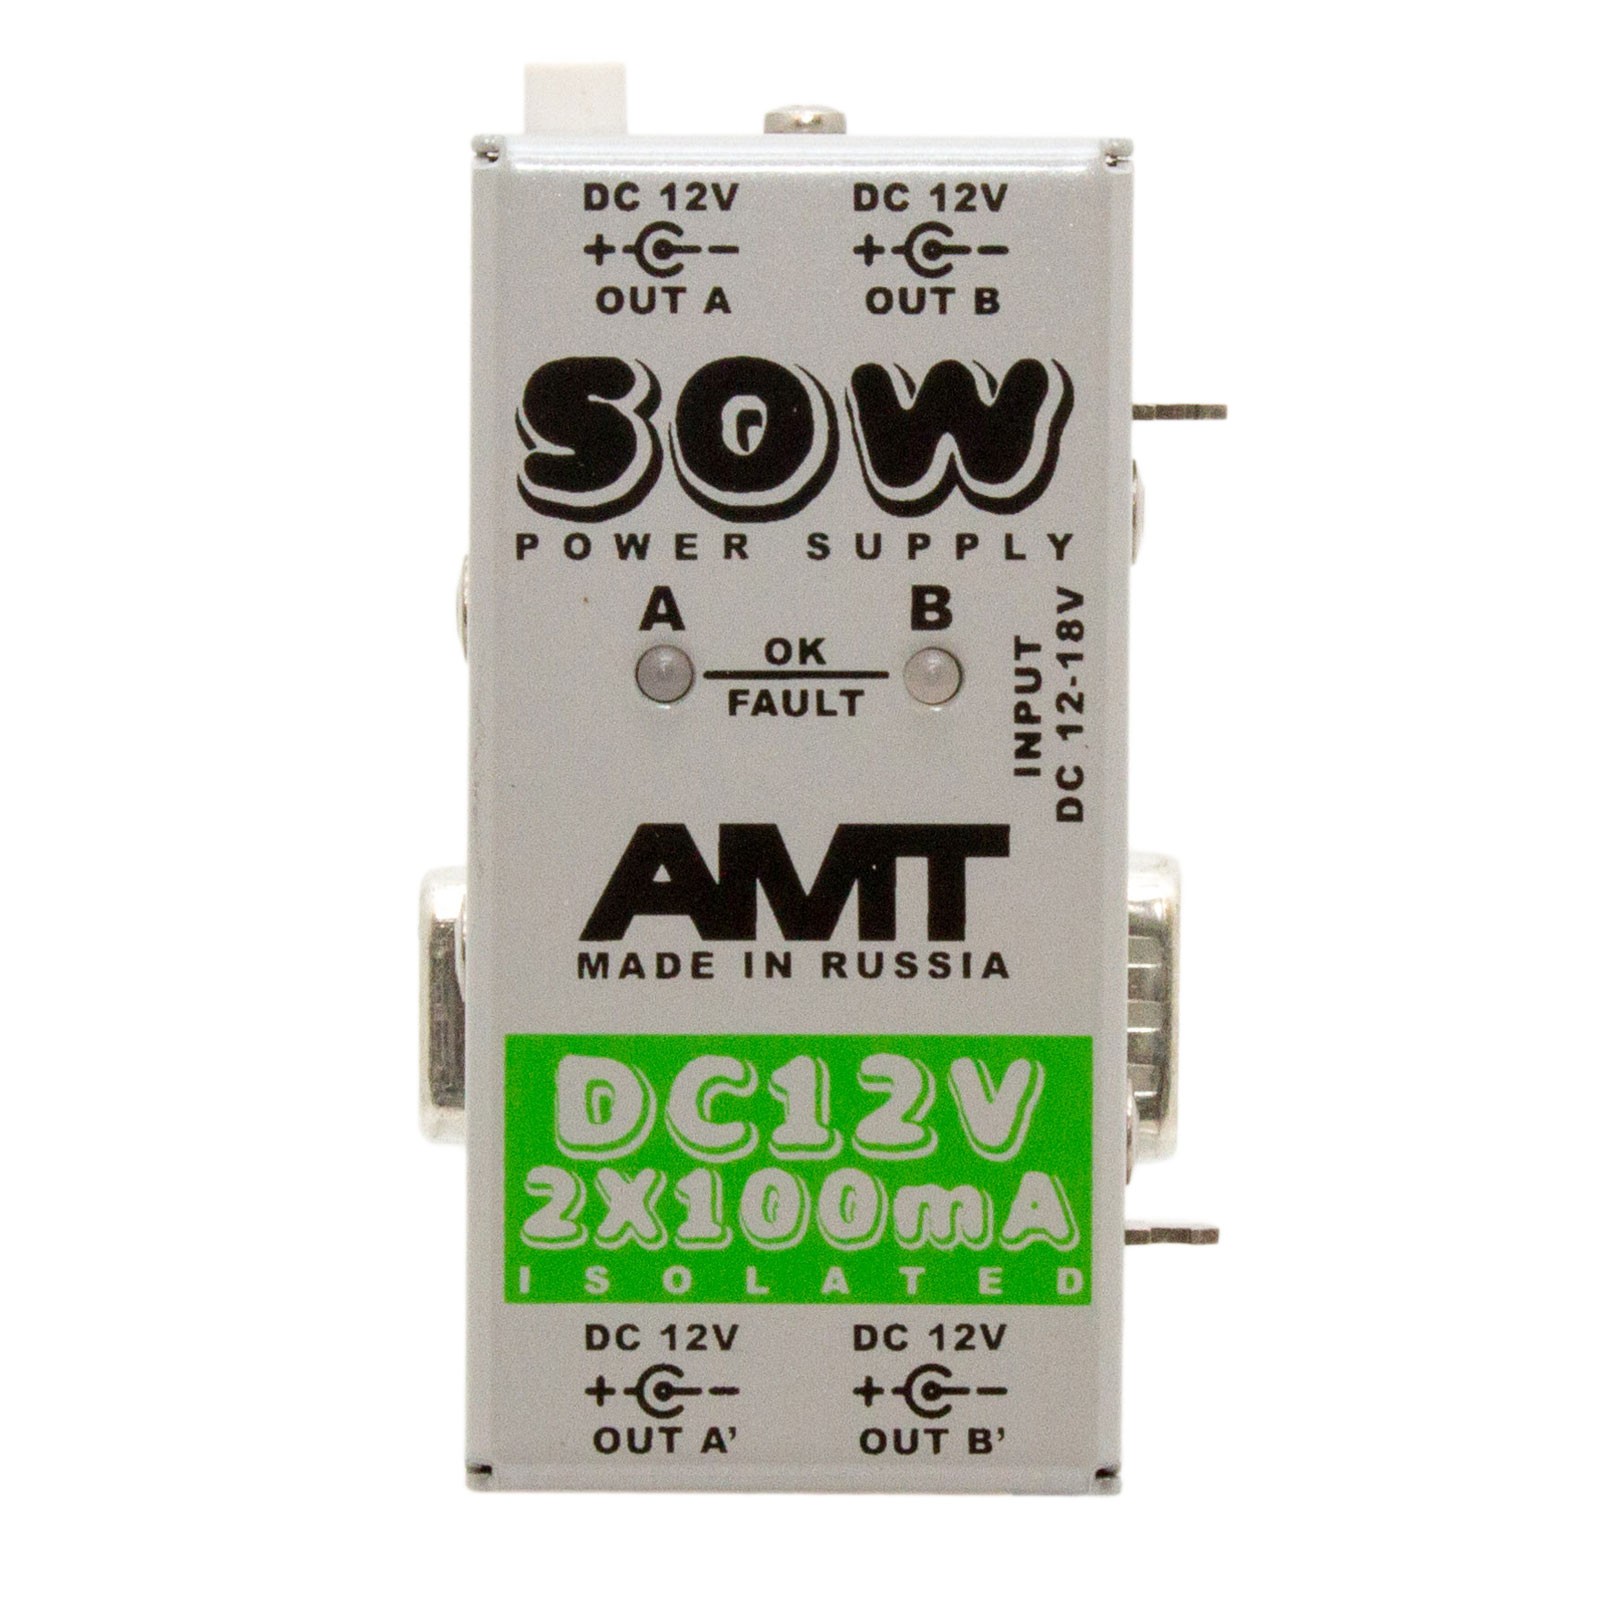 PS 12-2  Модульный блок питания AMT SOW module 122, 12VDC 2*100mA